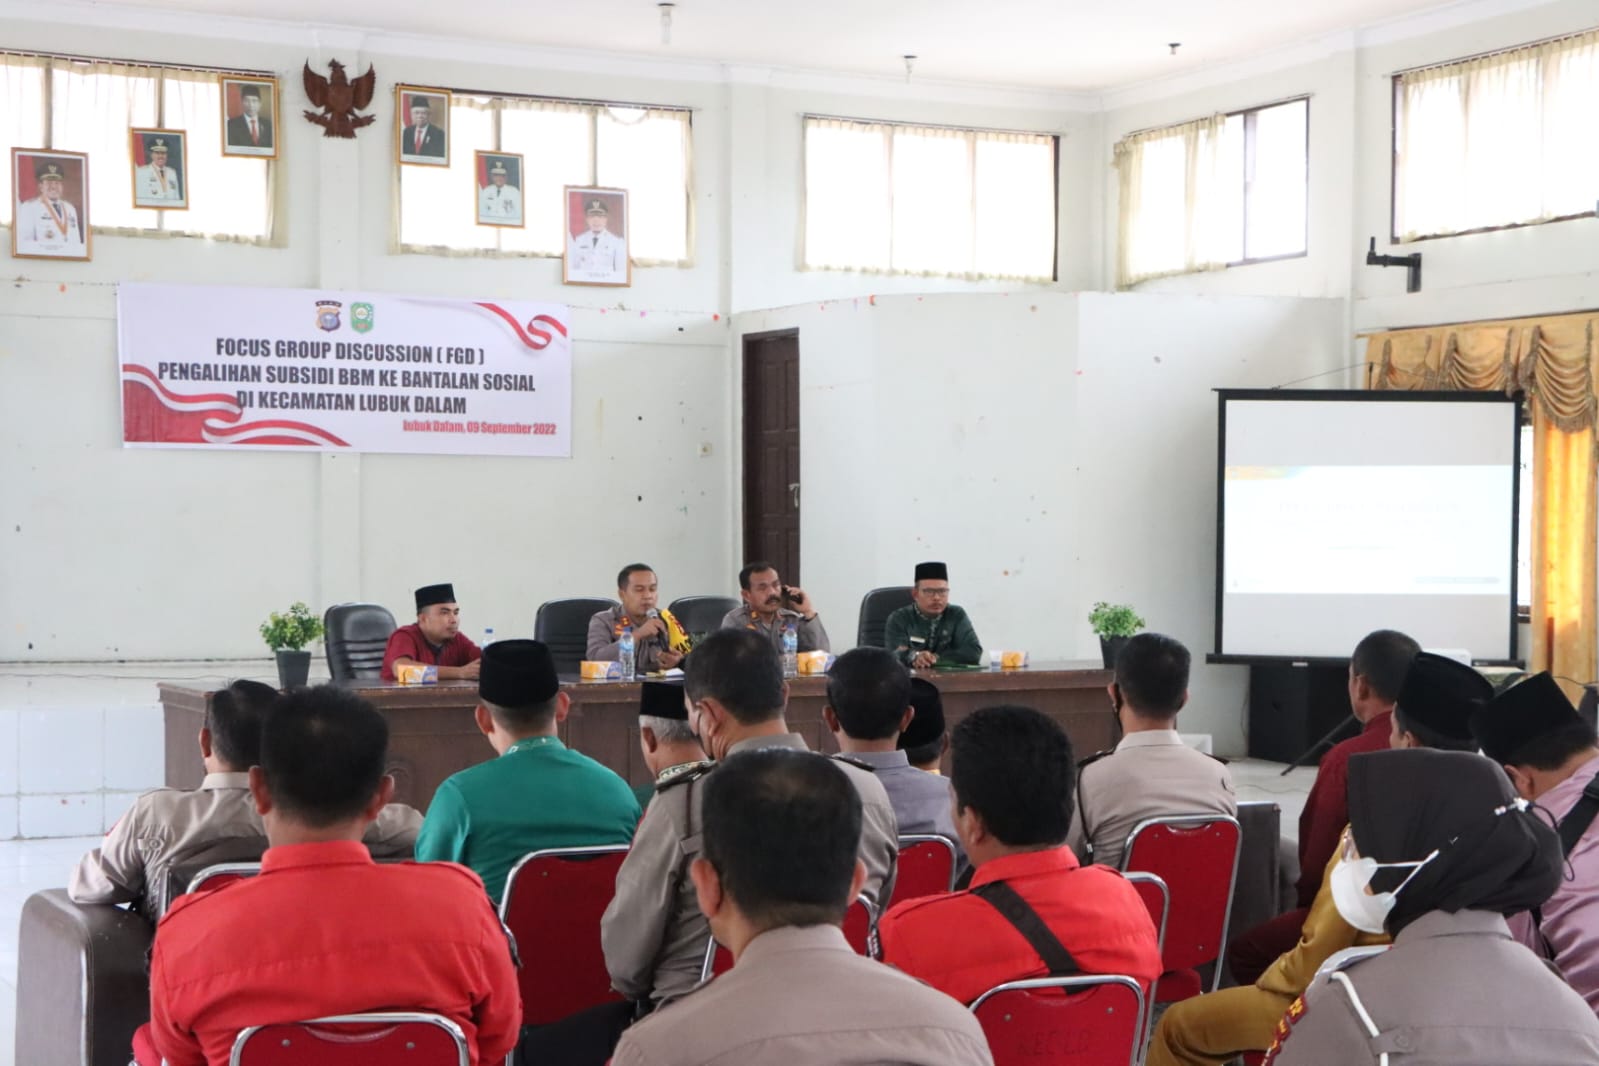 TPTKP Ikuti Forum Group Discussion di Kecamatan Lubuk Dalam